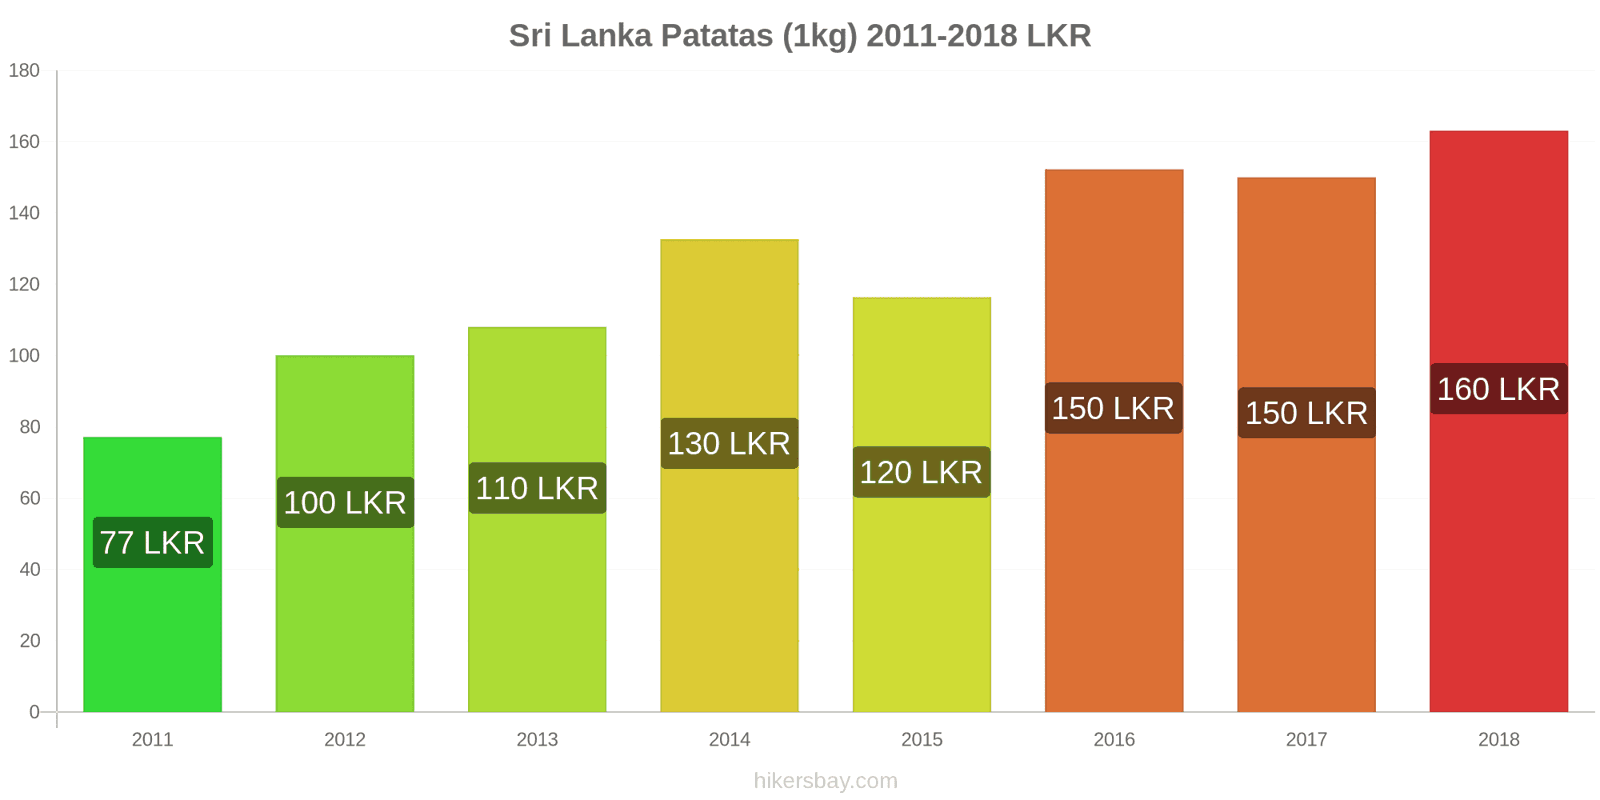 Sri Lanka cambios de precios Patatas (1kg) hikersbay.com